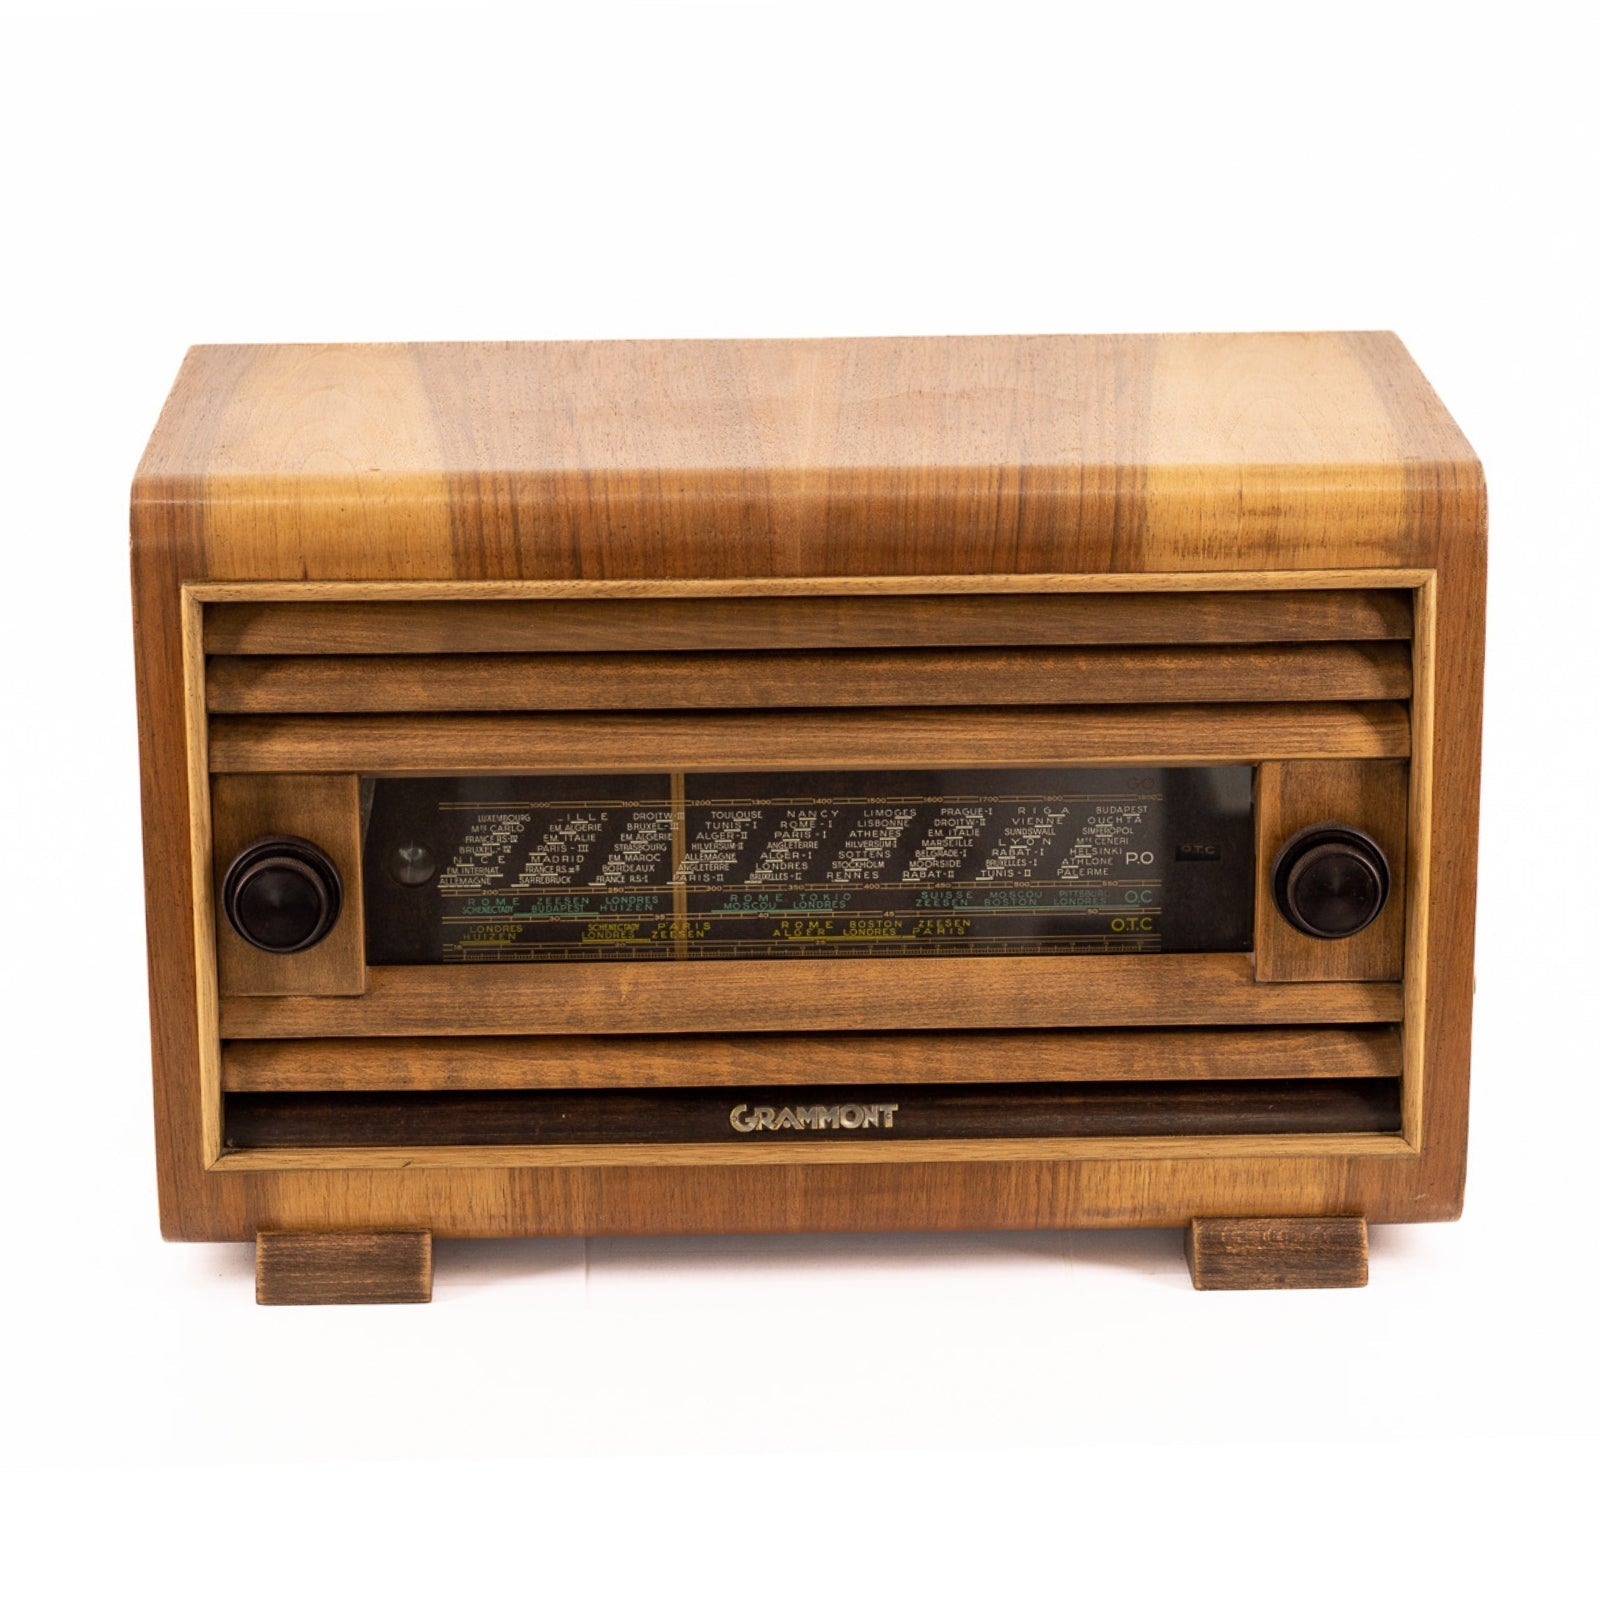 Radio Bluetooth Grammont Vintage 40's - A.bsolument - absolument -radio - vintage - prodige - bluetooth